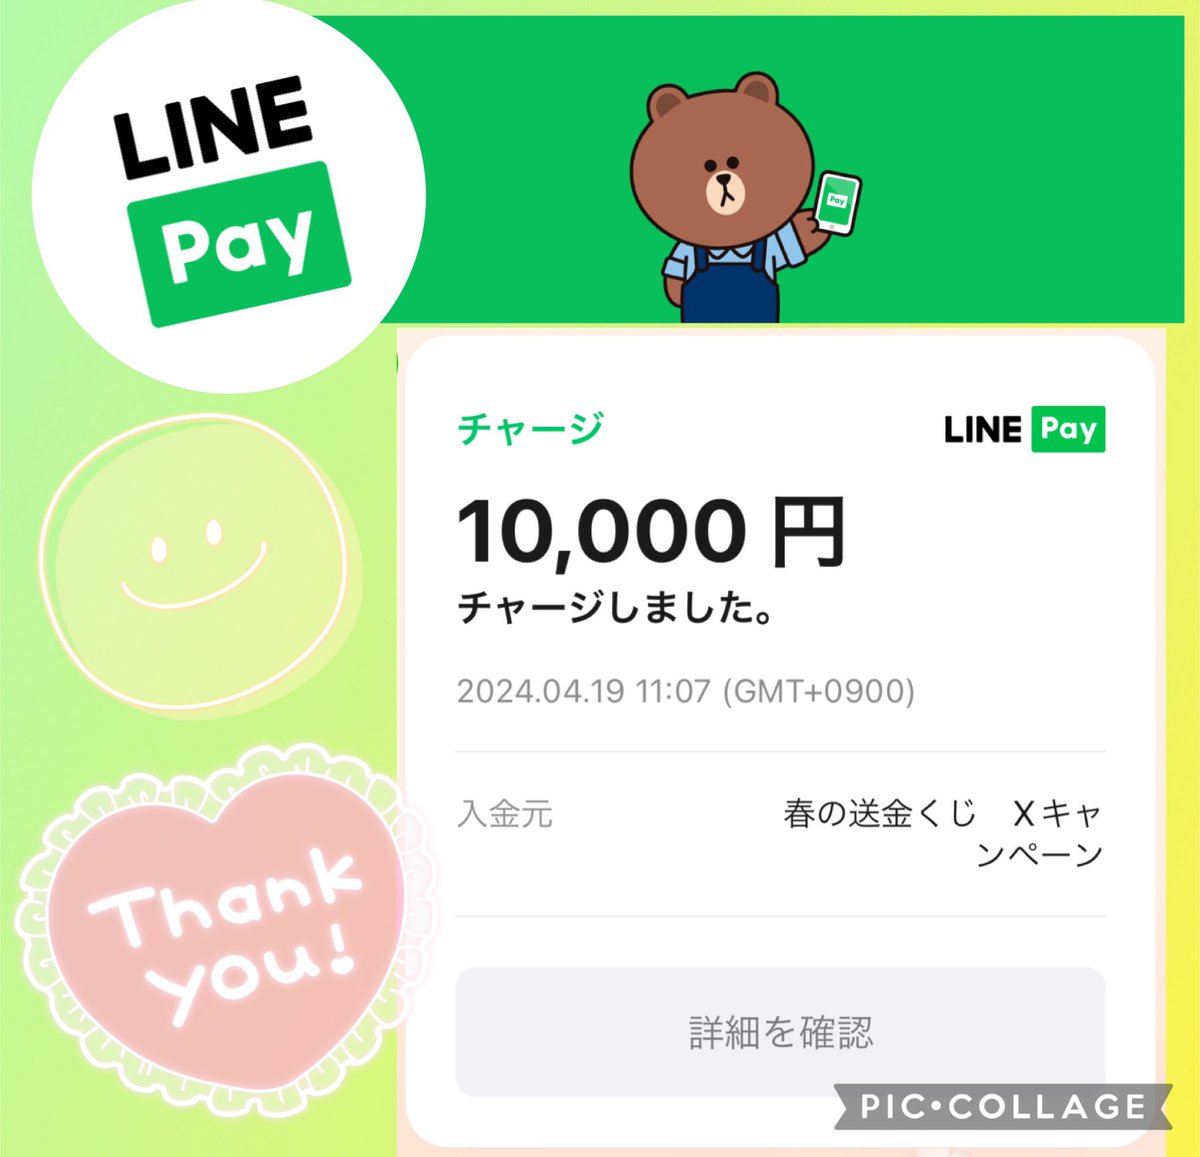 LINE Pay公式アカウント
(@linepay_jp )様より

「#LINEPay春の送金くじ」
Xハッシュタグキャンペーンにて

10,000円相当のLINE Pay残高を
いただきました✨

お店でのお支払いから
友だちへの送金など
簡単にできてとても便利なので
いつも愛用しています💚

▽つづく

#すももの幸せ当選報告